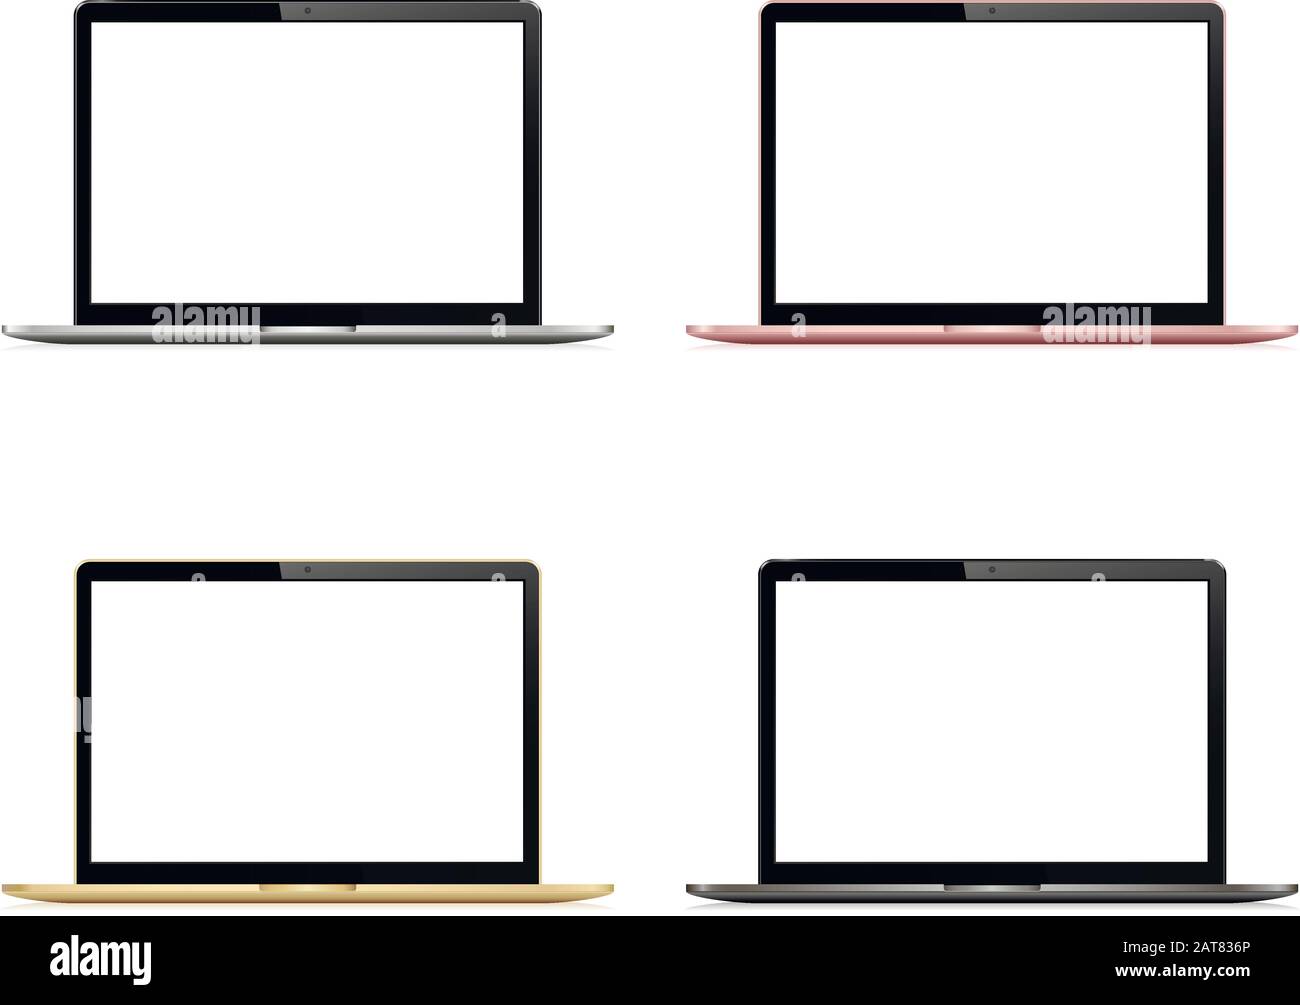 Notebook-Kollektion mit leerem Bildschirm isoliert. Silber, Grau, Gold und Rosenfarbe. Stock Vektor